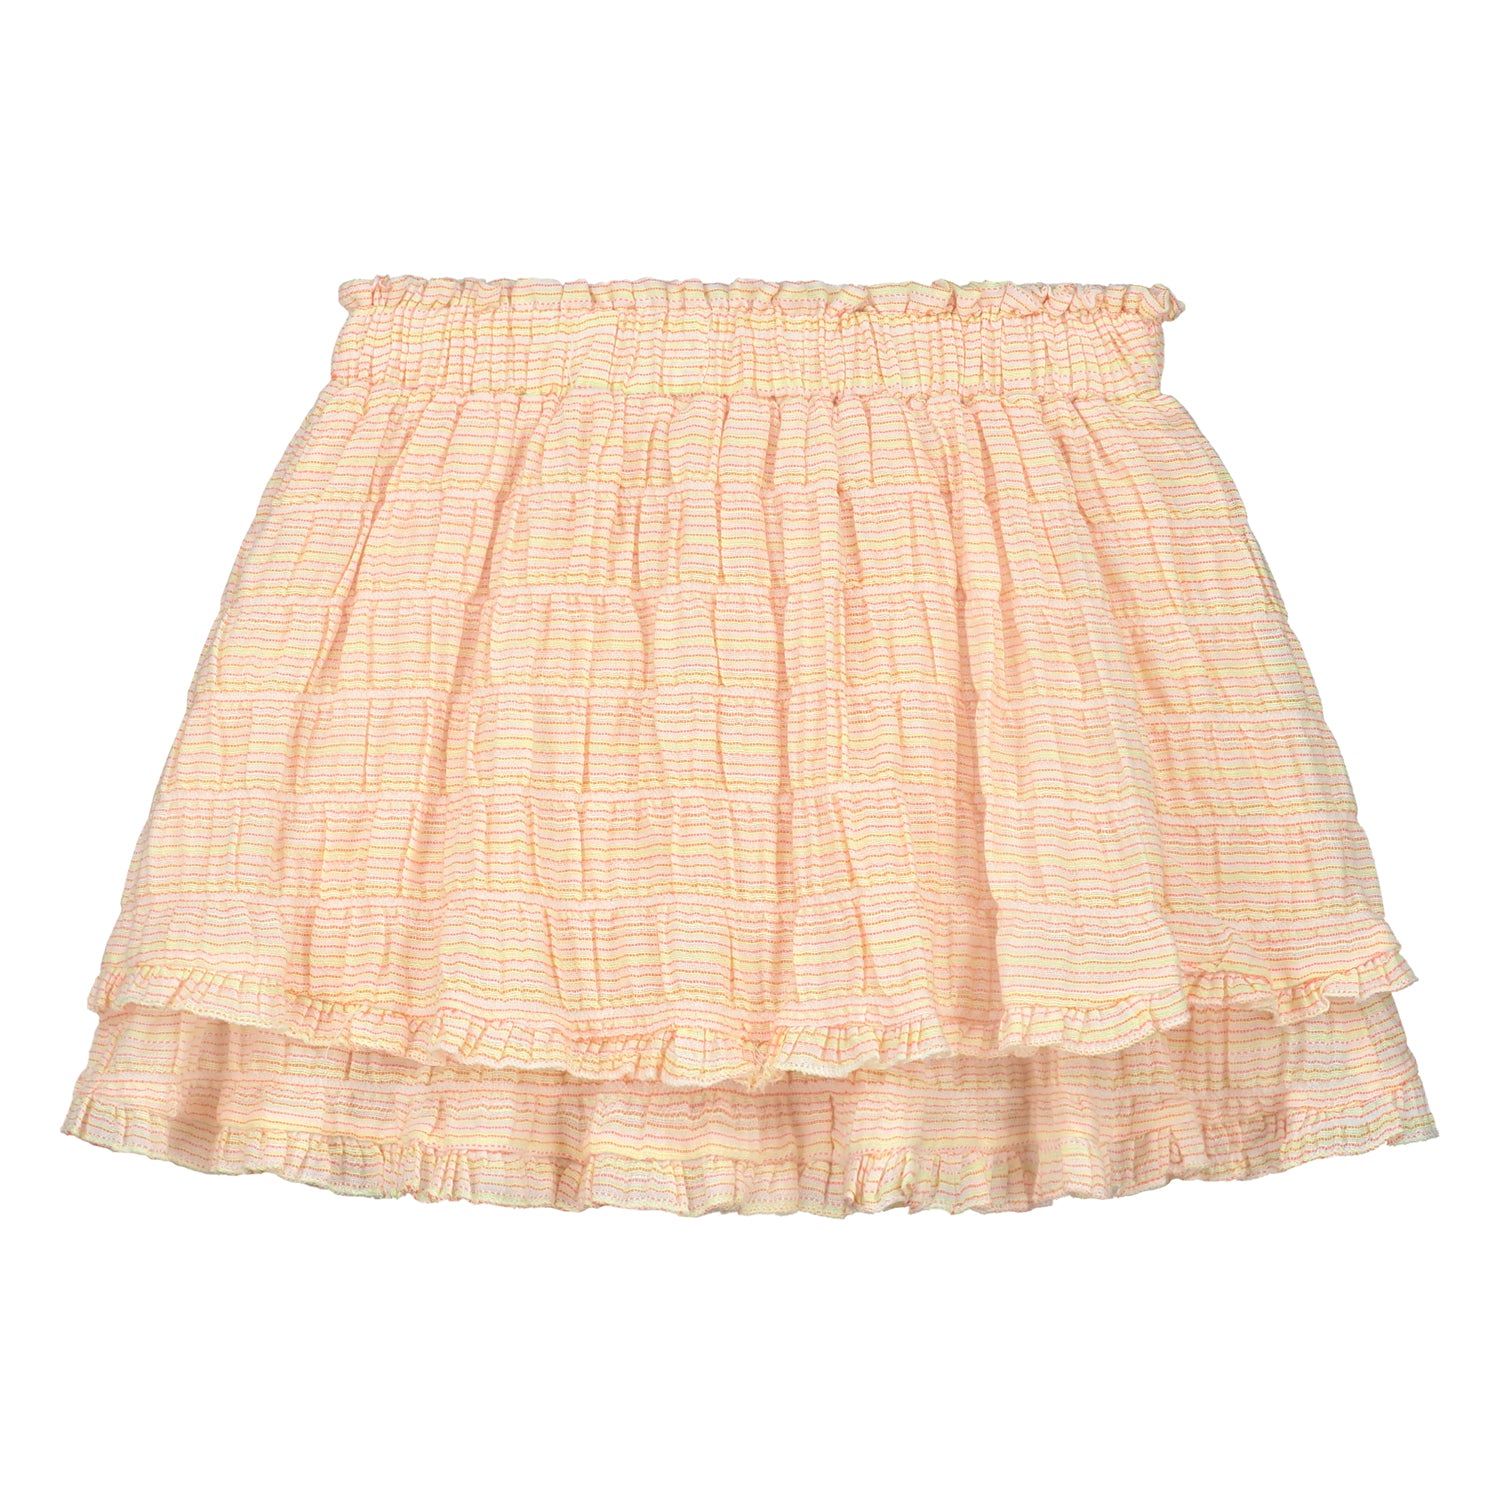 Charlie Petite - iris skirt - multi stripe